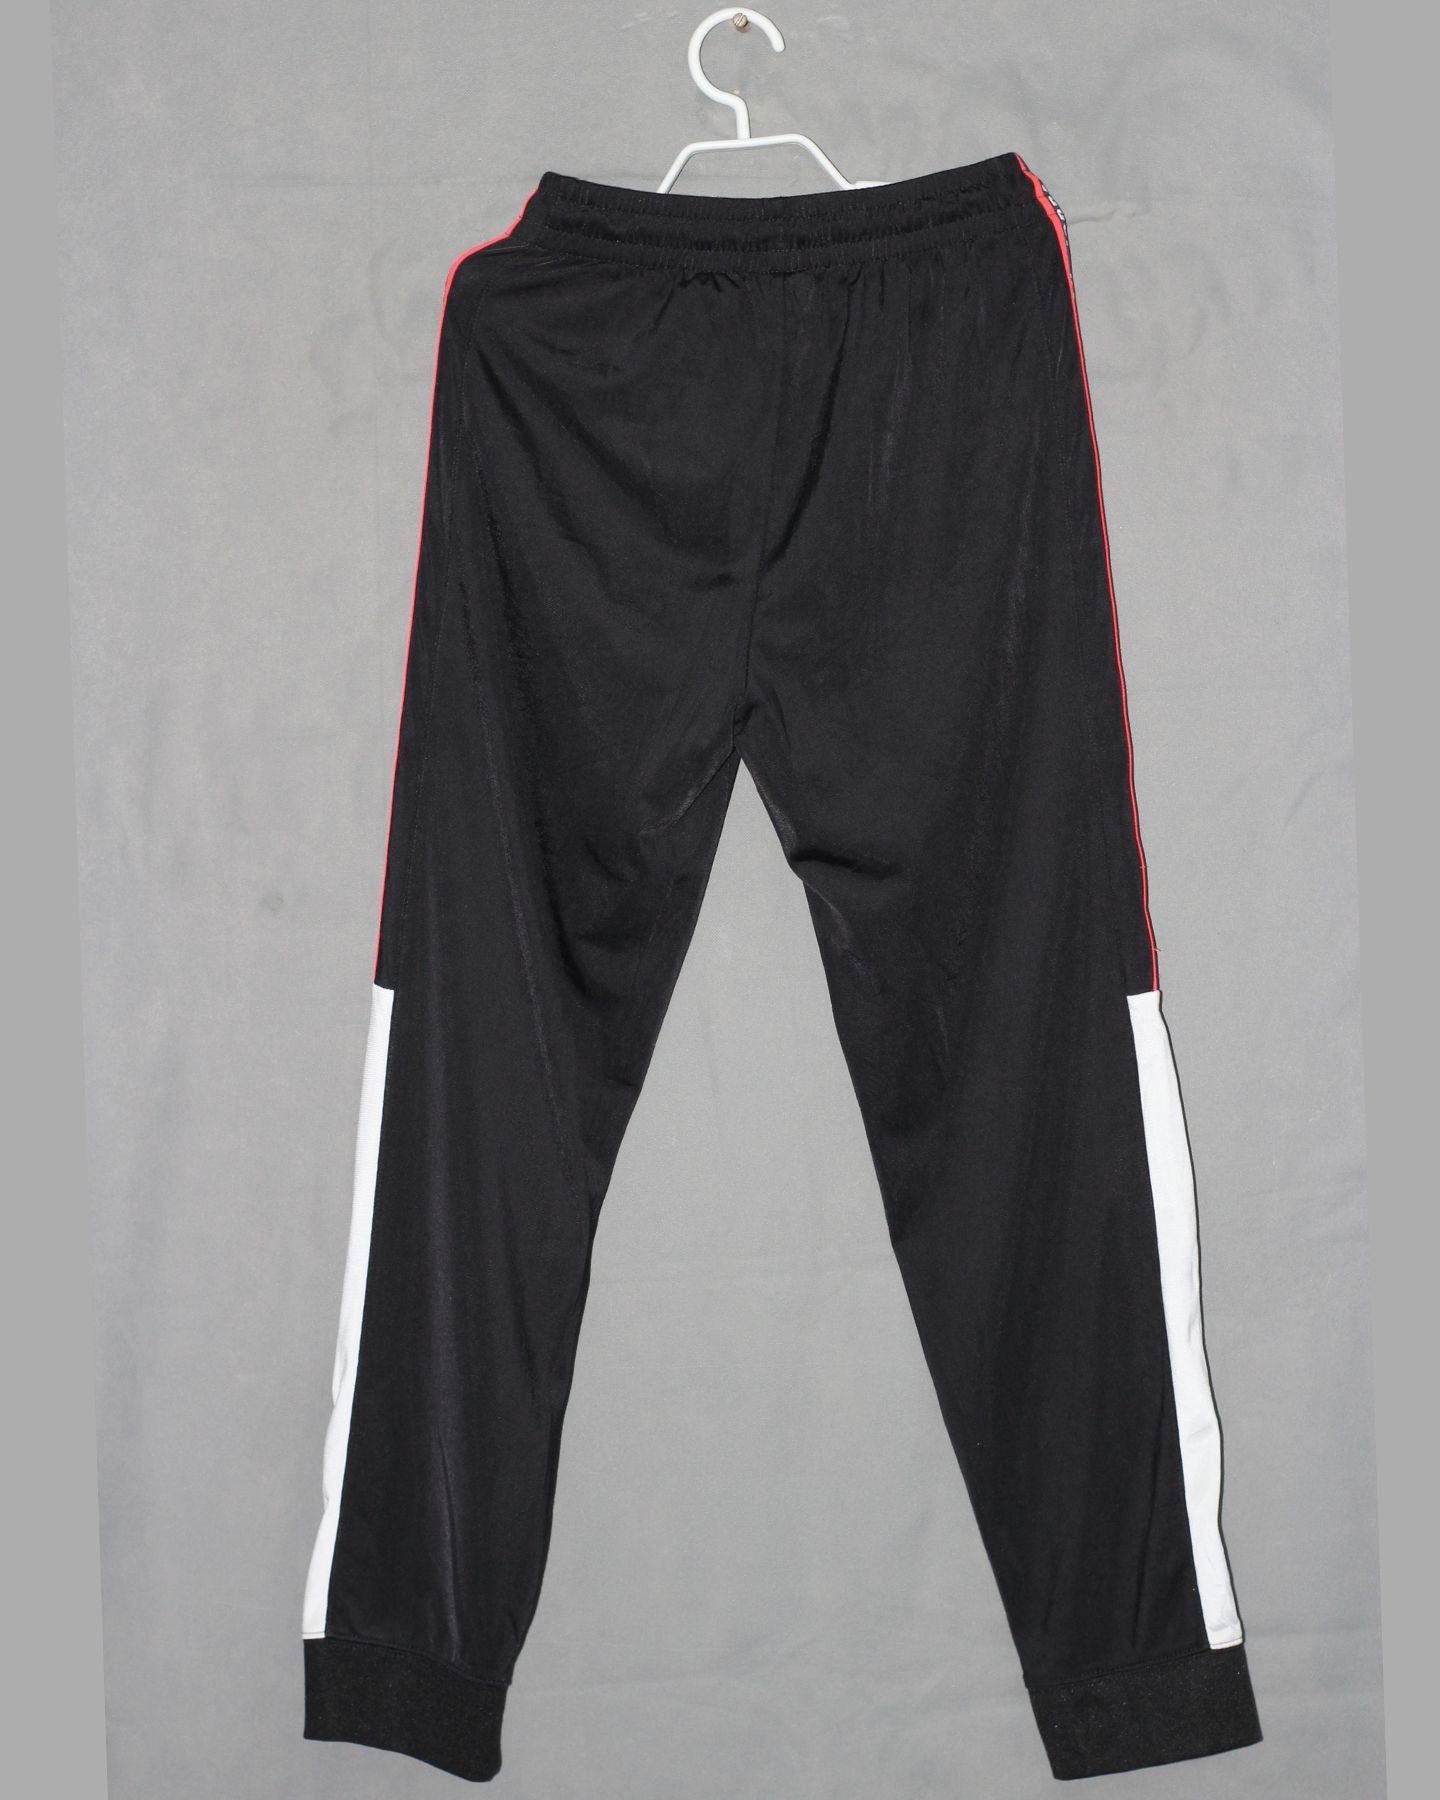 Jordan Branded Original Sports Trouser For Men